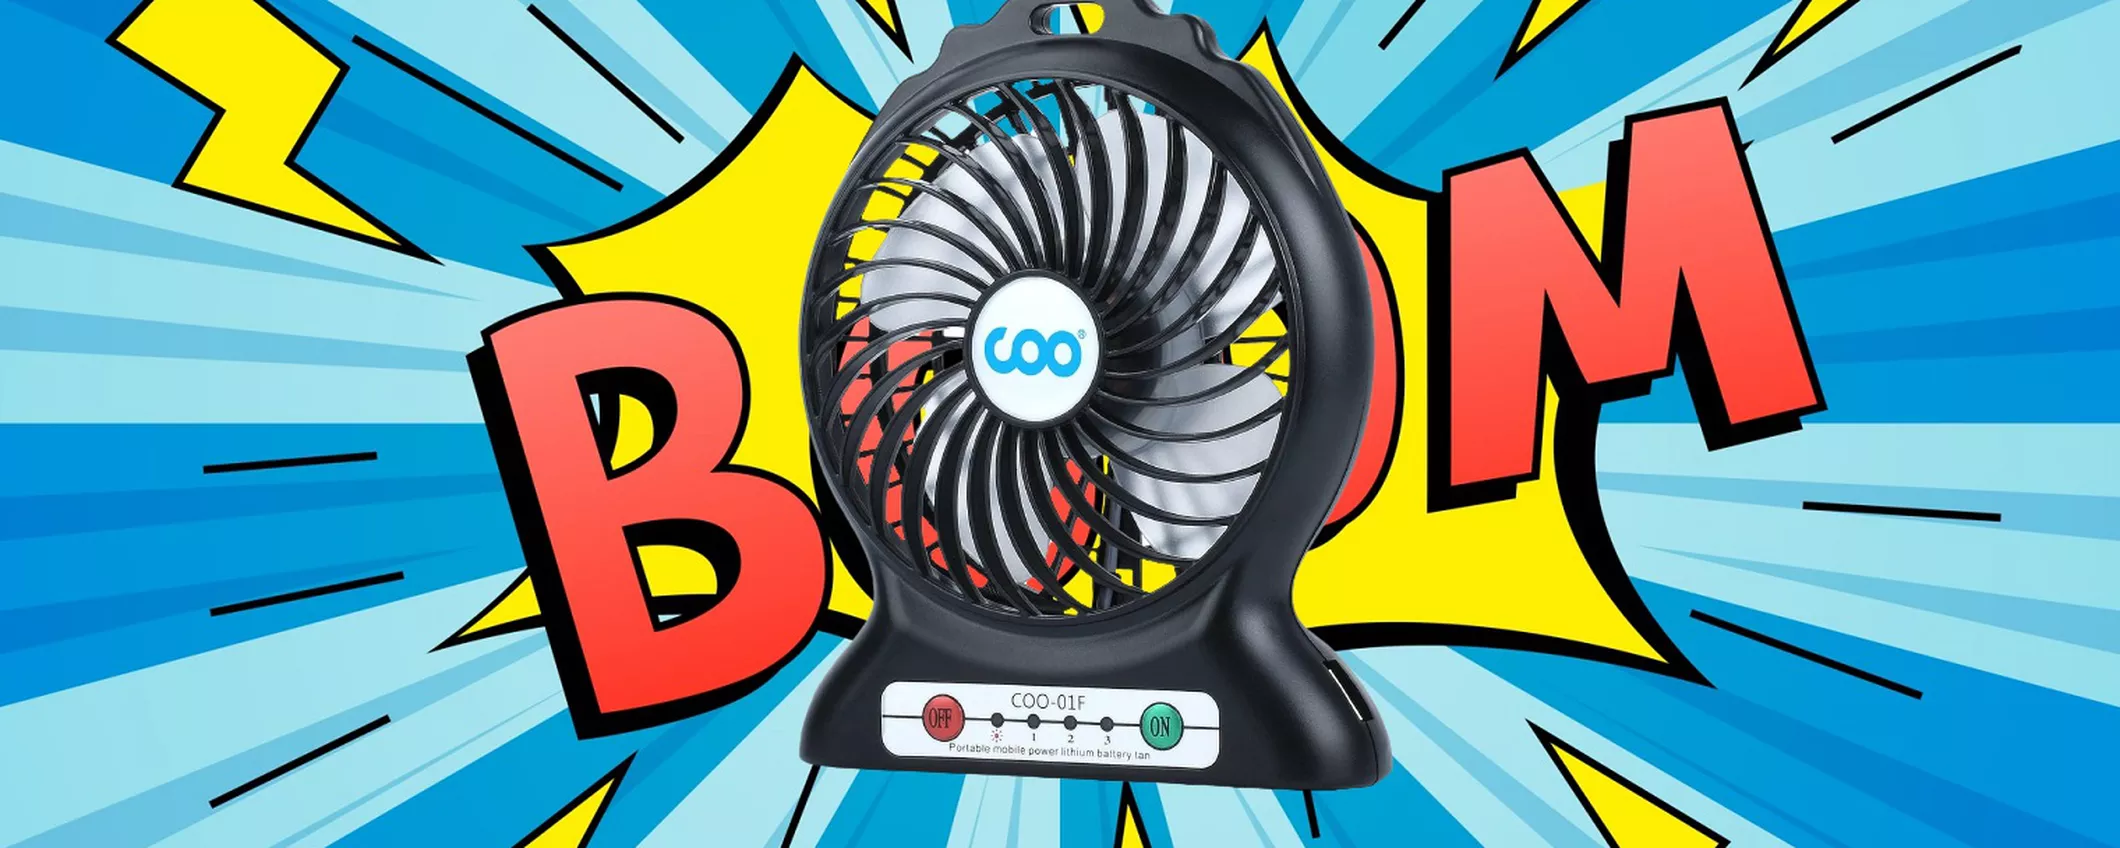 Goditi la freschezza che vuoi OVUNQUE TU VADA con il Mini ventilatore a SOLI 8 EURO!